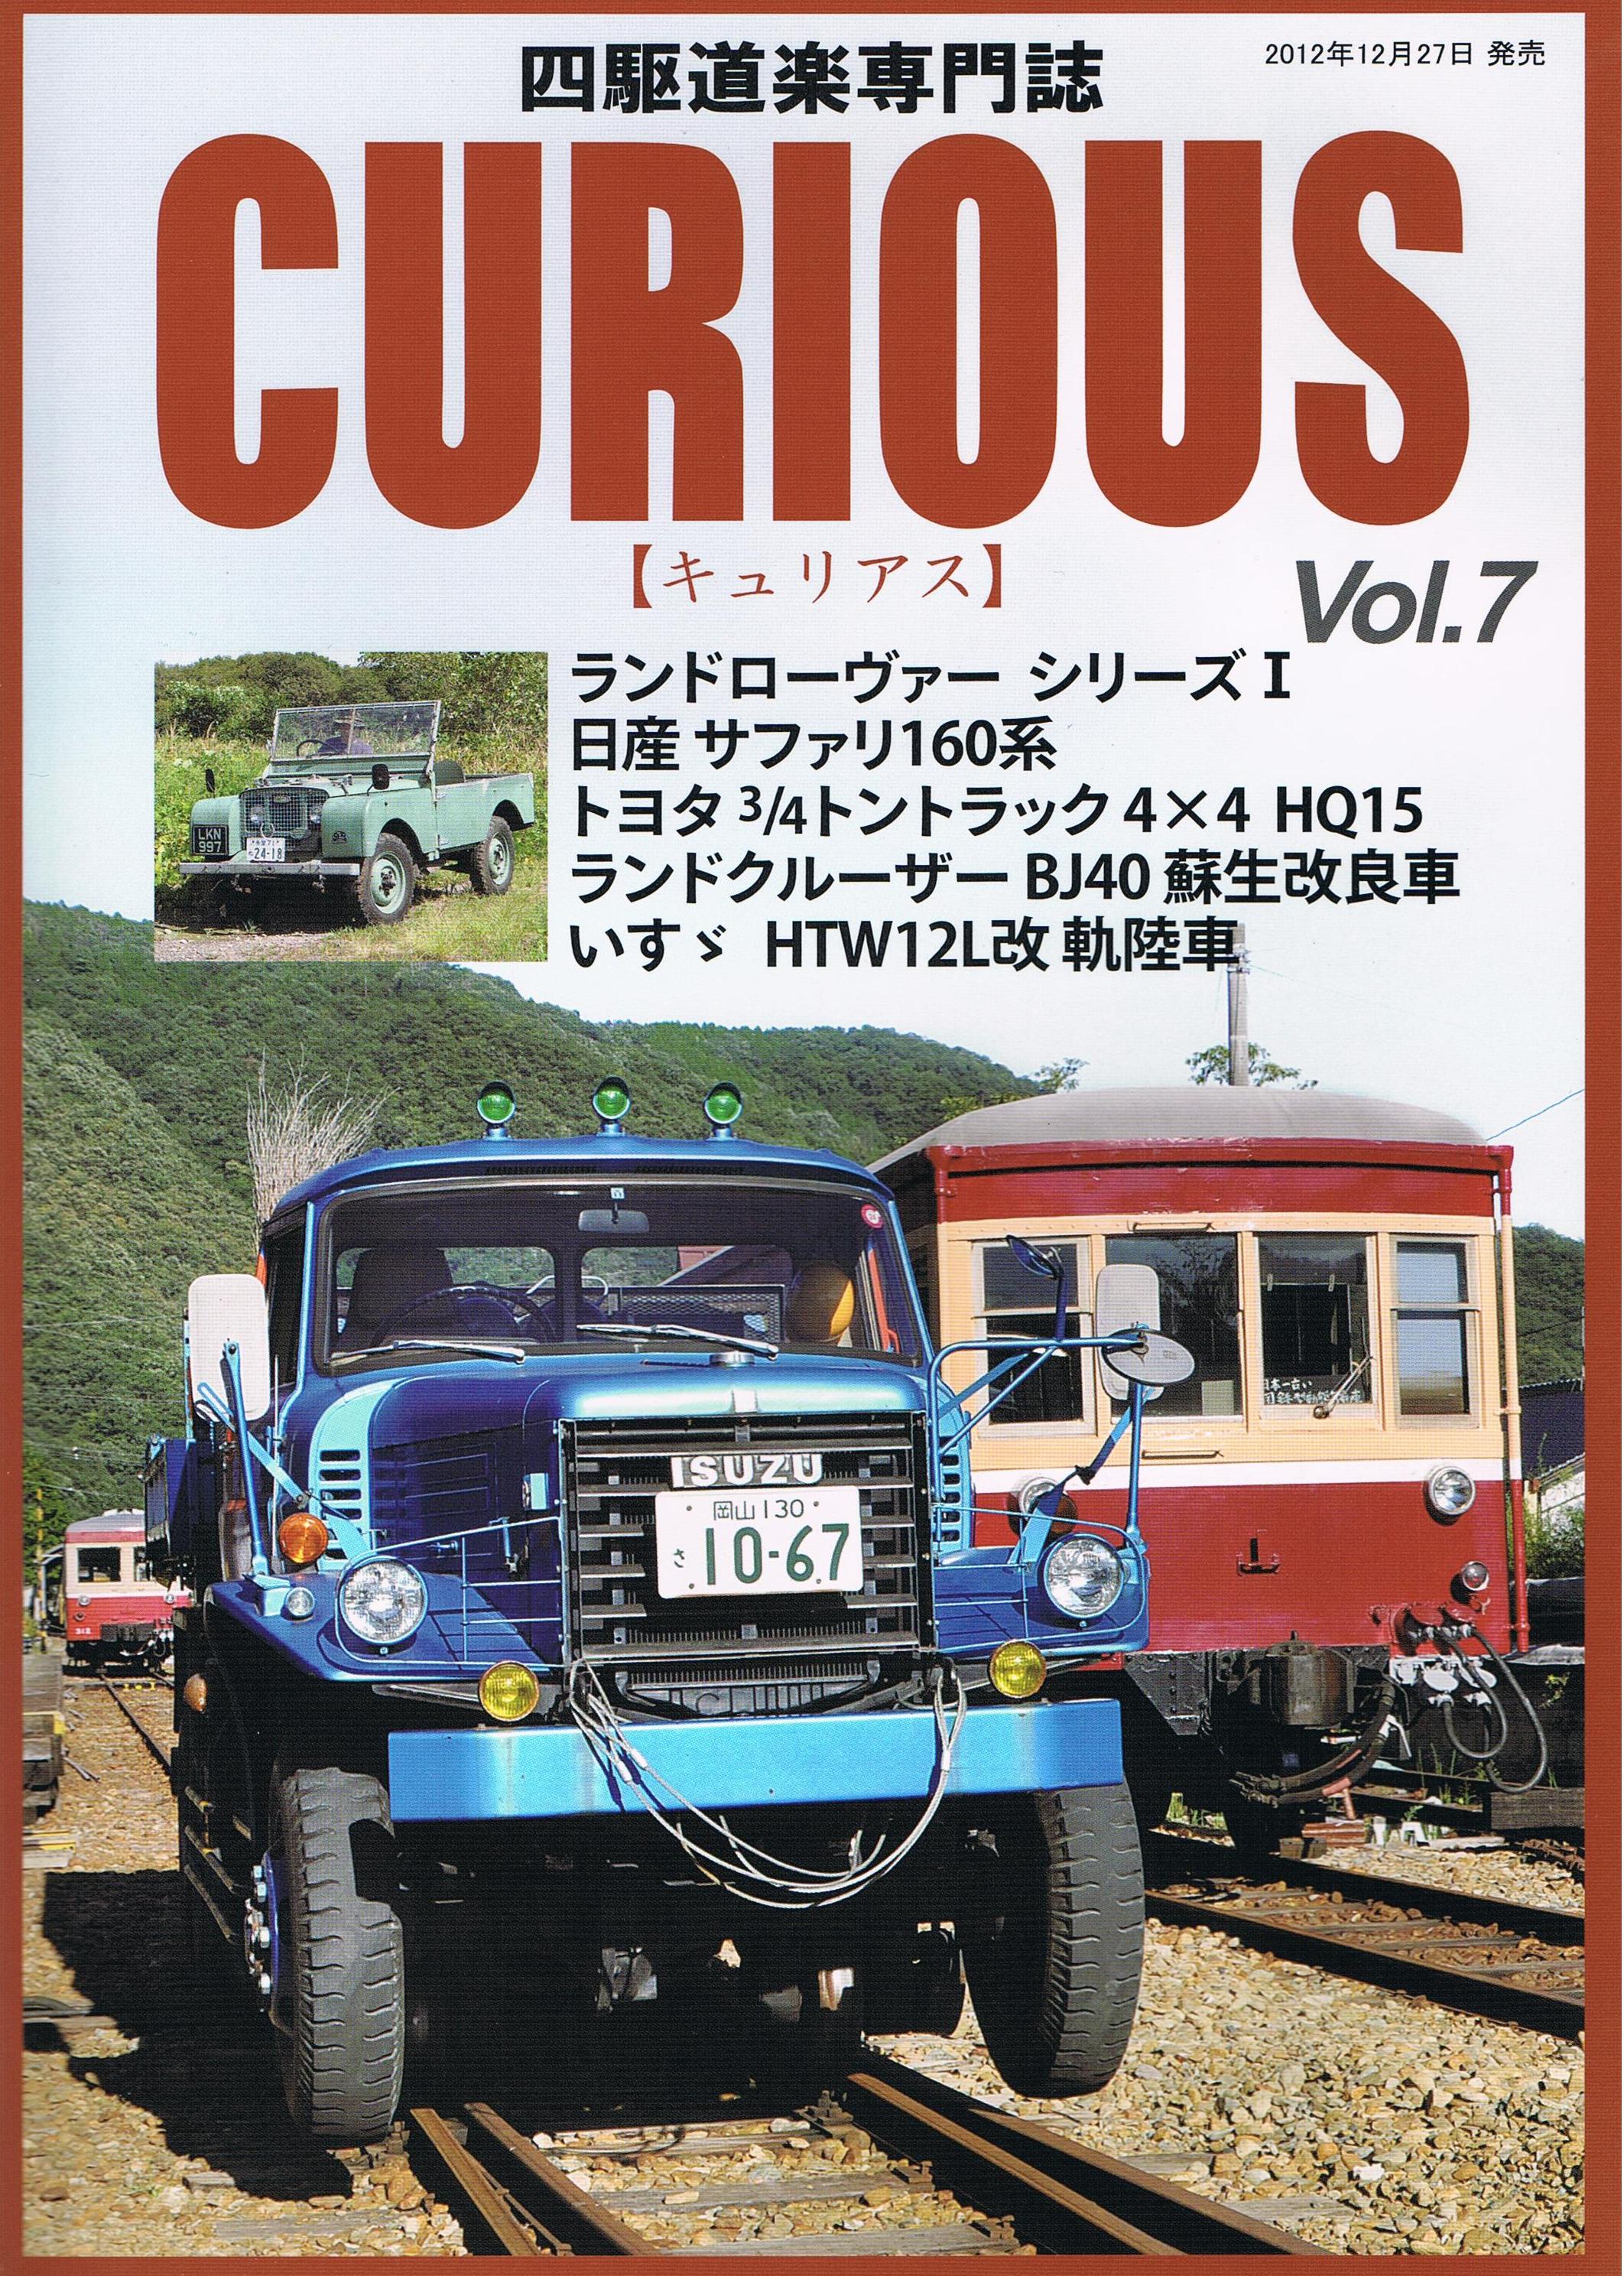 四駆道楽専門誌 CURIOUS Vol.7 に掲載されました♪ - Home